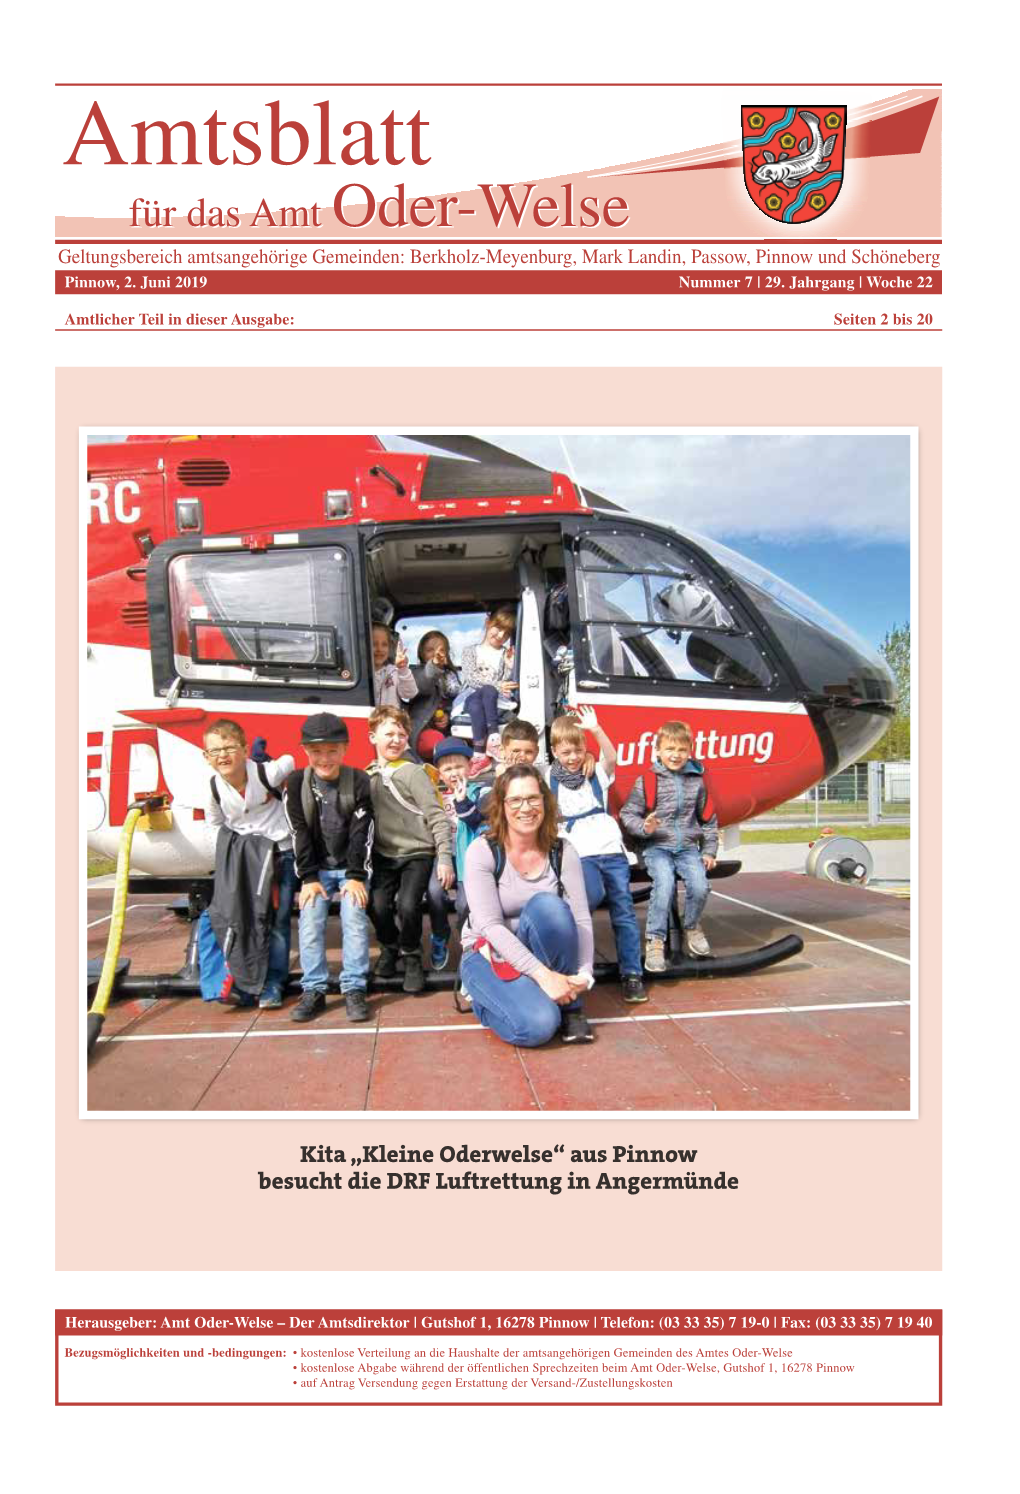 Kita „Kleine Oderwelse“ Aus Pinnow Besucht Die DRF Luftrettung in Angermünde